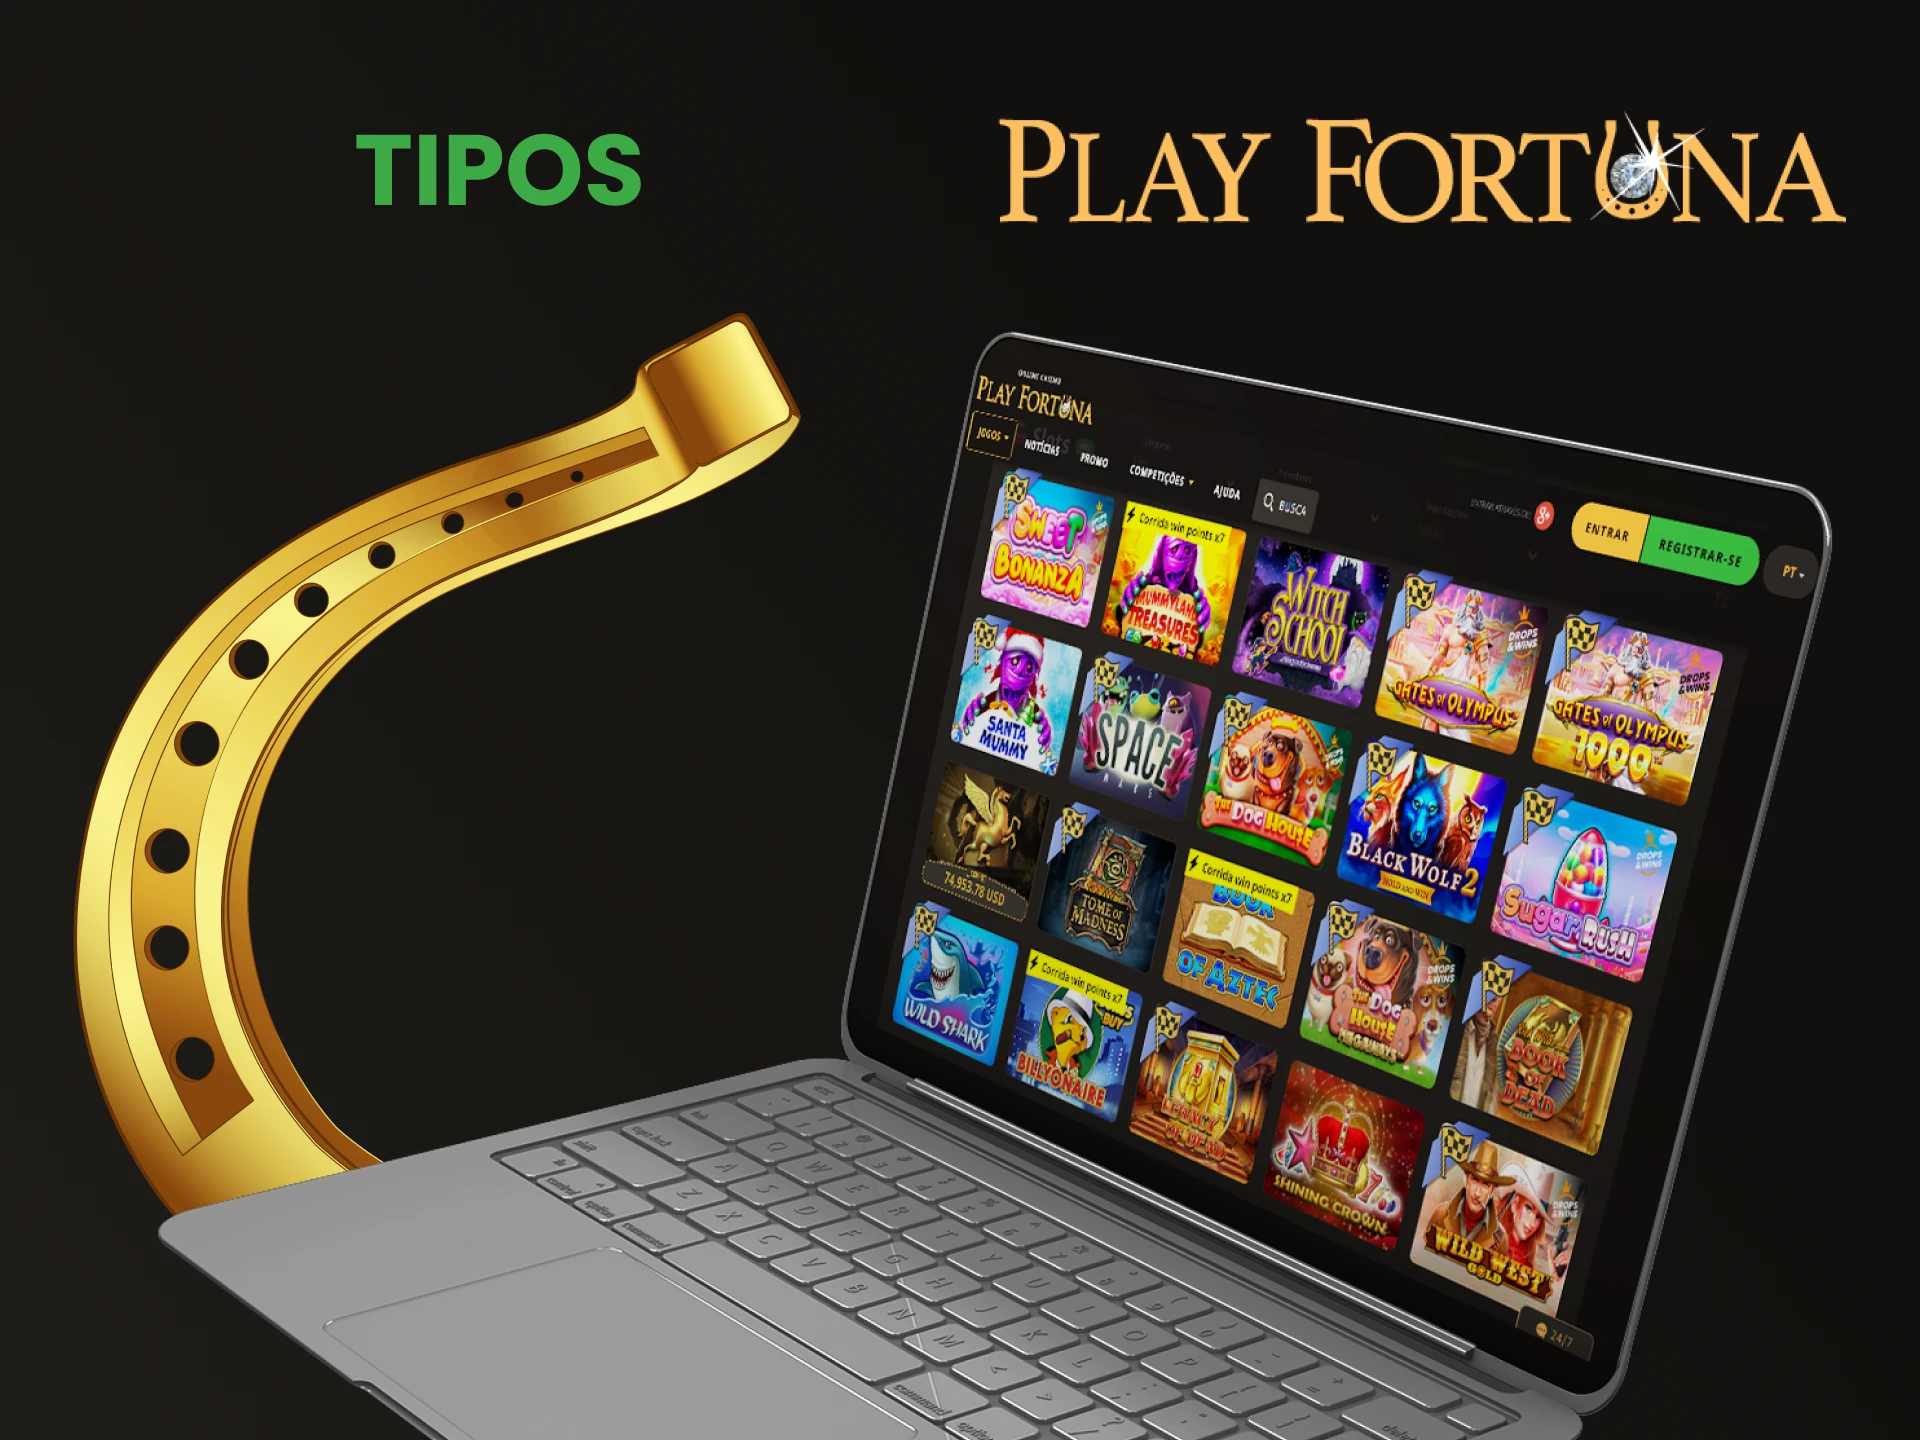 Diremos quais tipos de slots estão disponíveis no Play Fortuna.